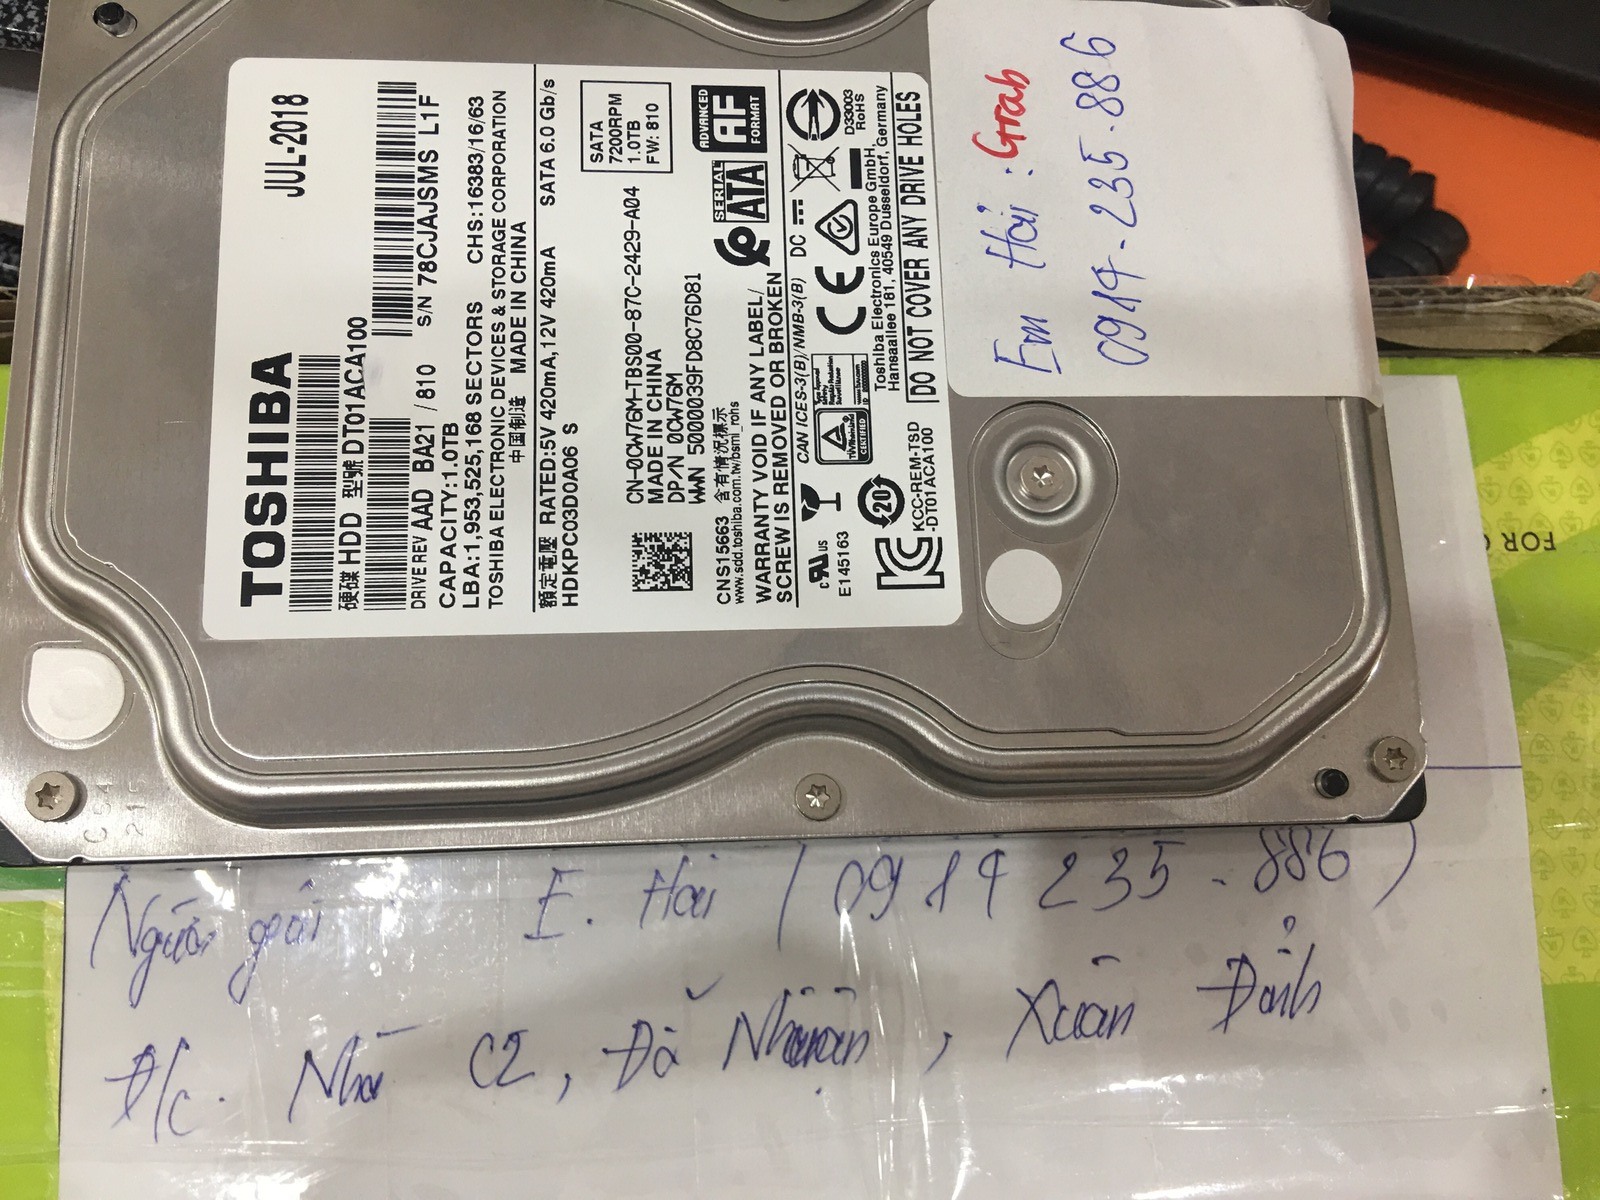 Cứu dữ liệu ổ cứng Toshiba 1TB lỗi đầu đọc 03/08/2019 - cuumaytinh